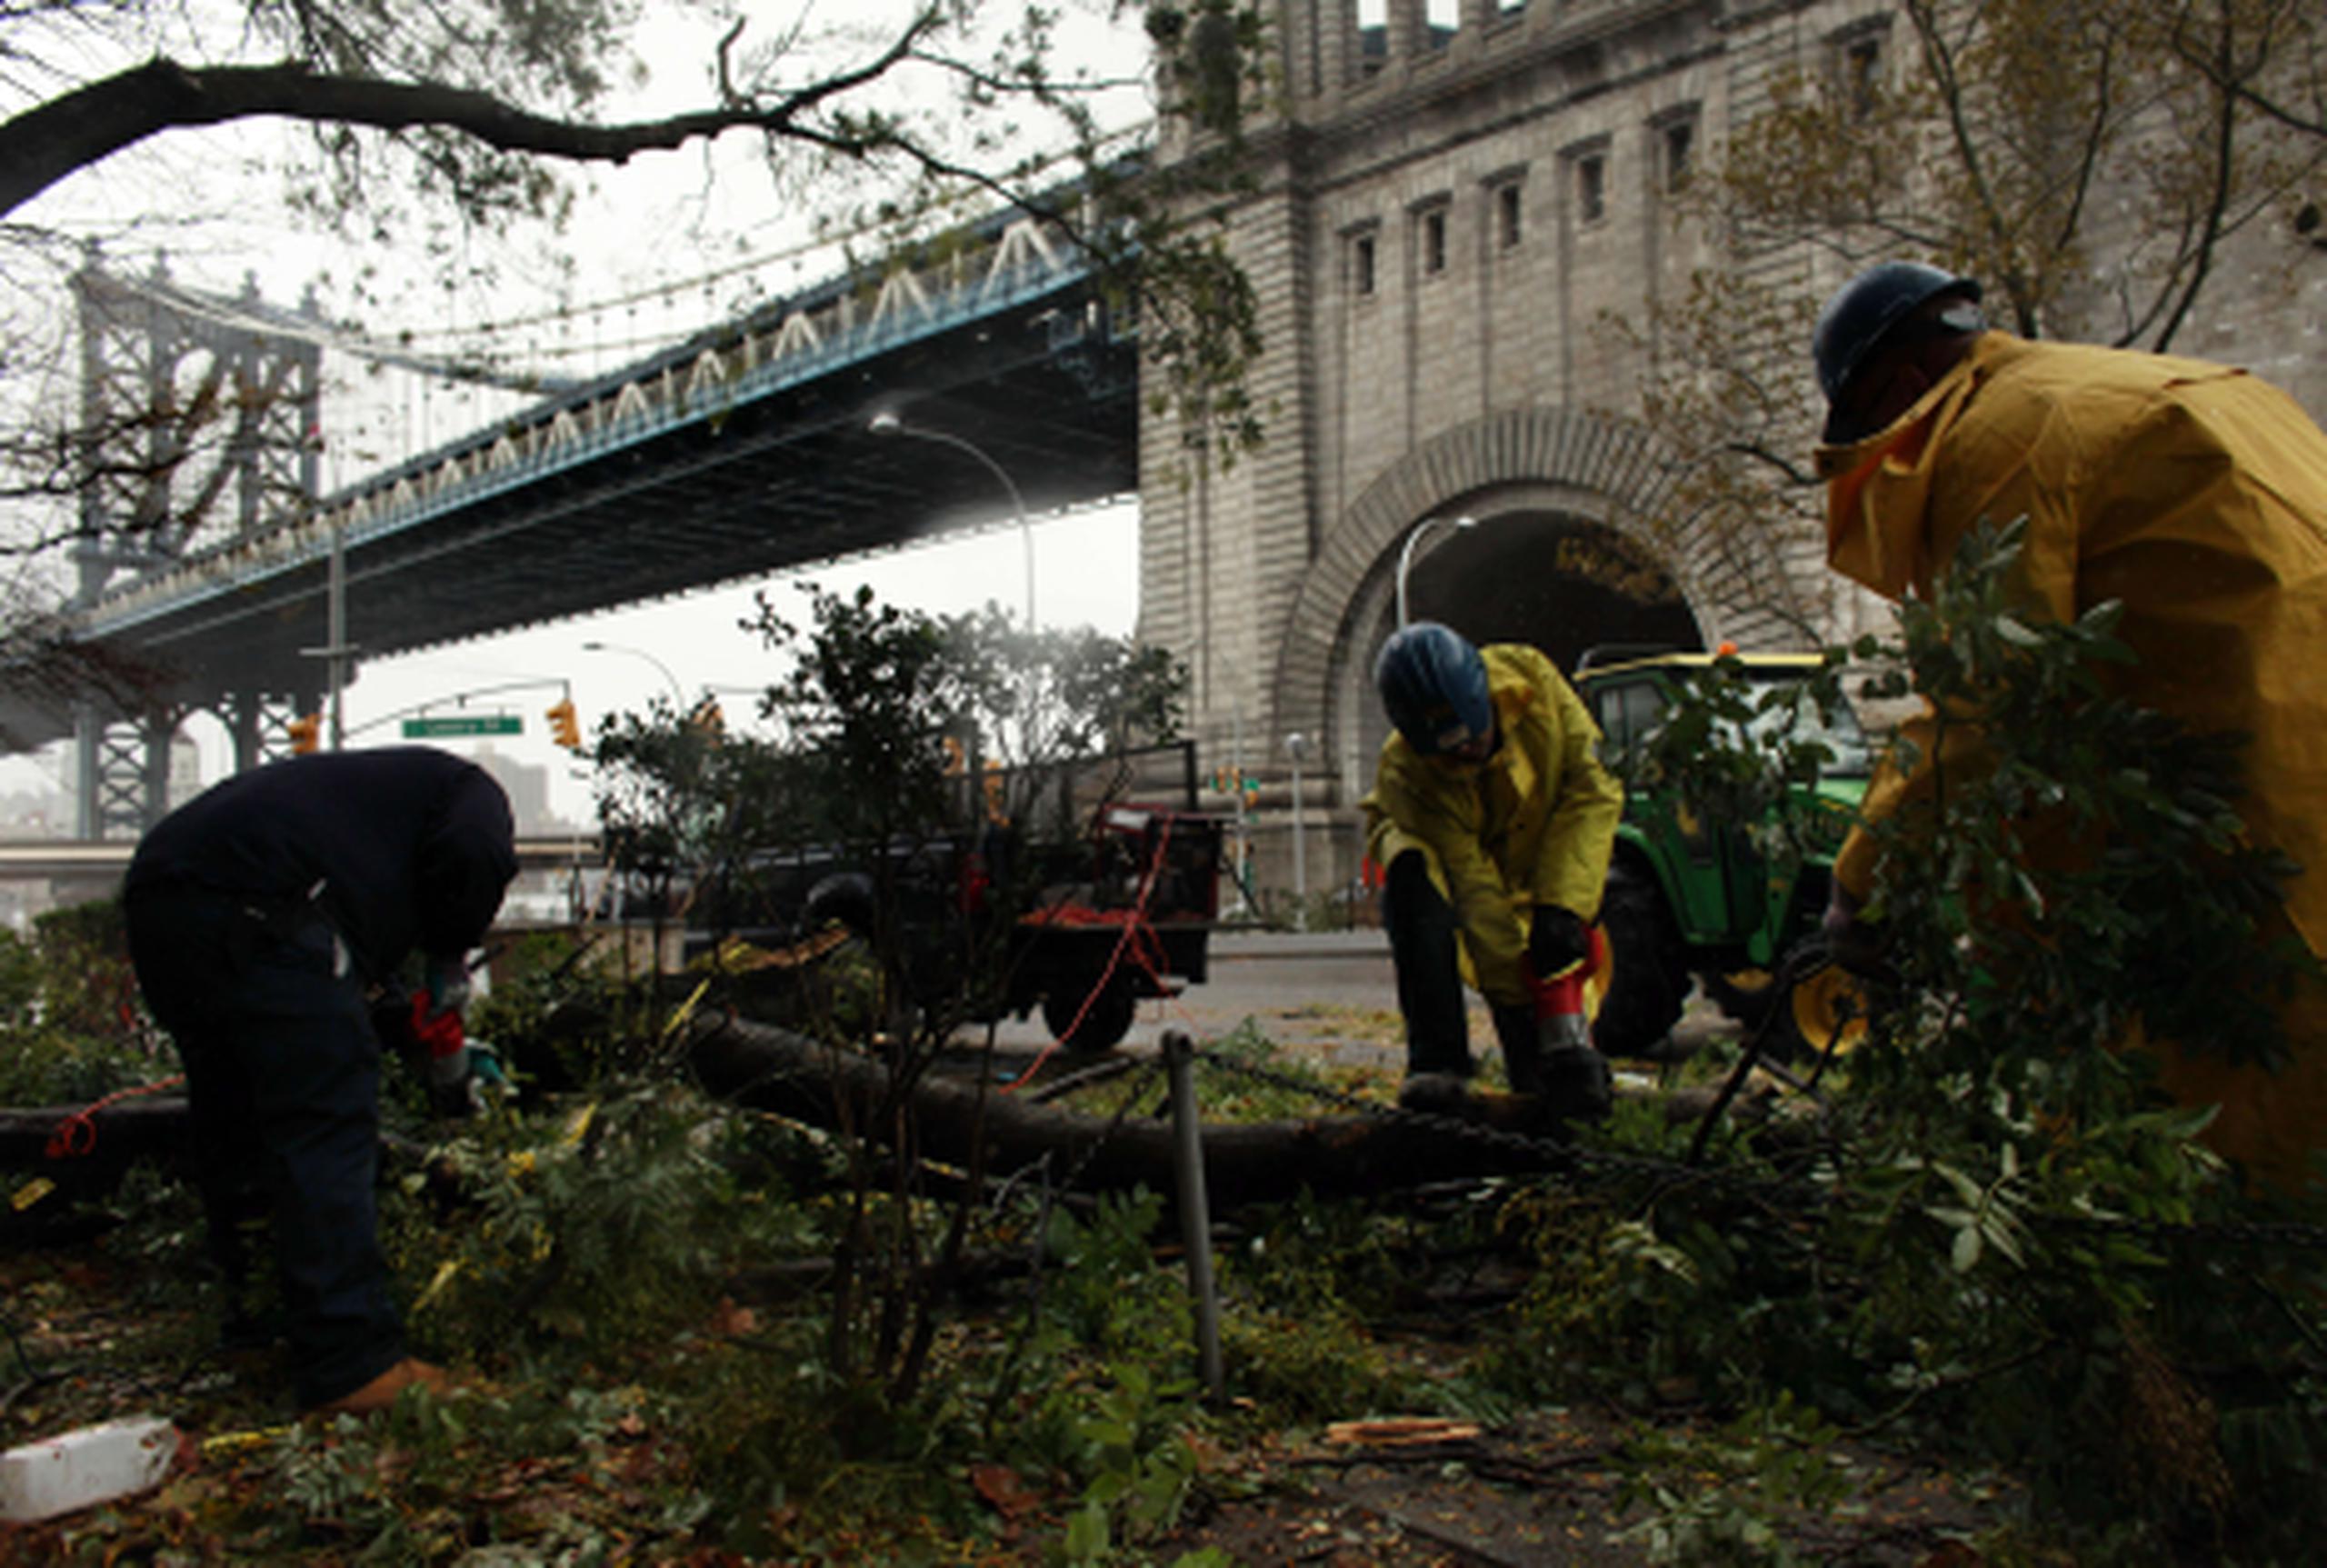 La tormenta Sandy azotó Nueva York el lunes y ocasionó grandes destrozos, pero los organizadores del maratón insisten que tienen suficiente tiempo antes de la carrera del domingo para preparar la ruta y que los participantes lleguen a la ciudad. (AFP/Allison Joyce)